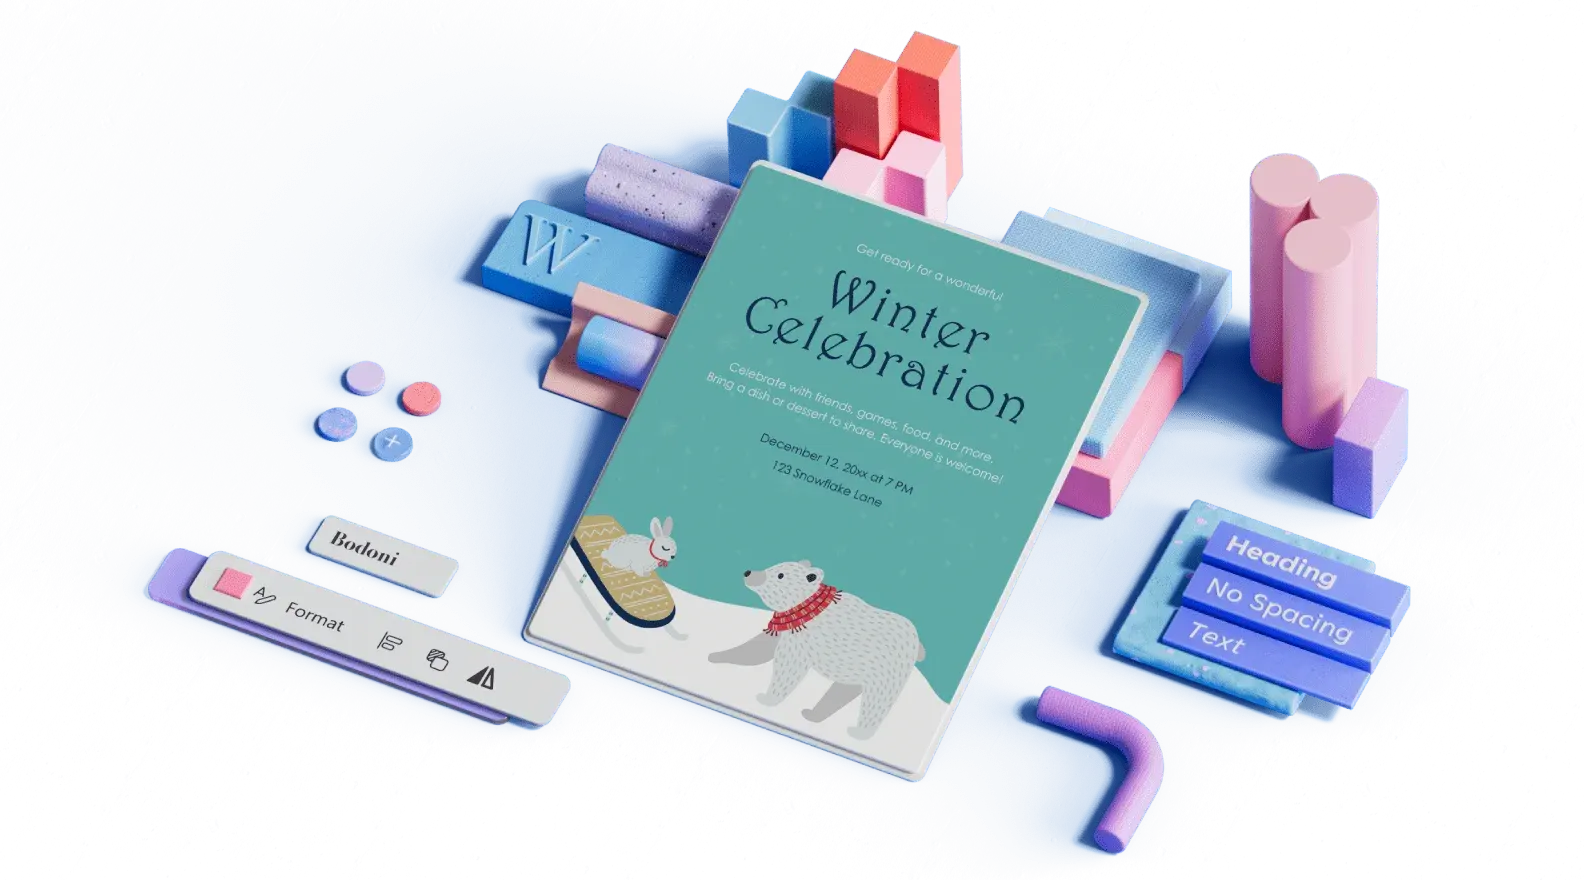 Mall för vinterfirande omgiven av 3D-illustrerade designelement